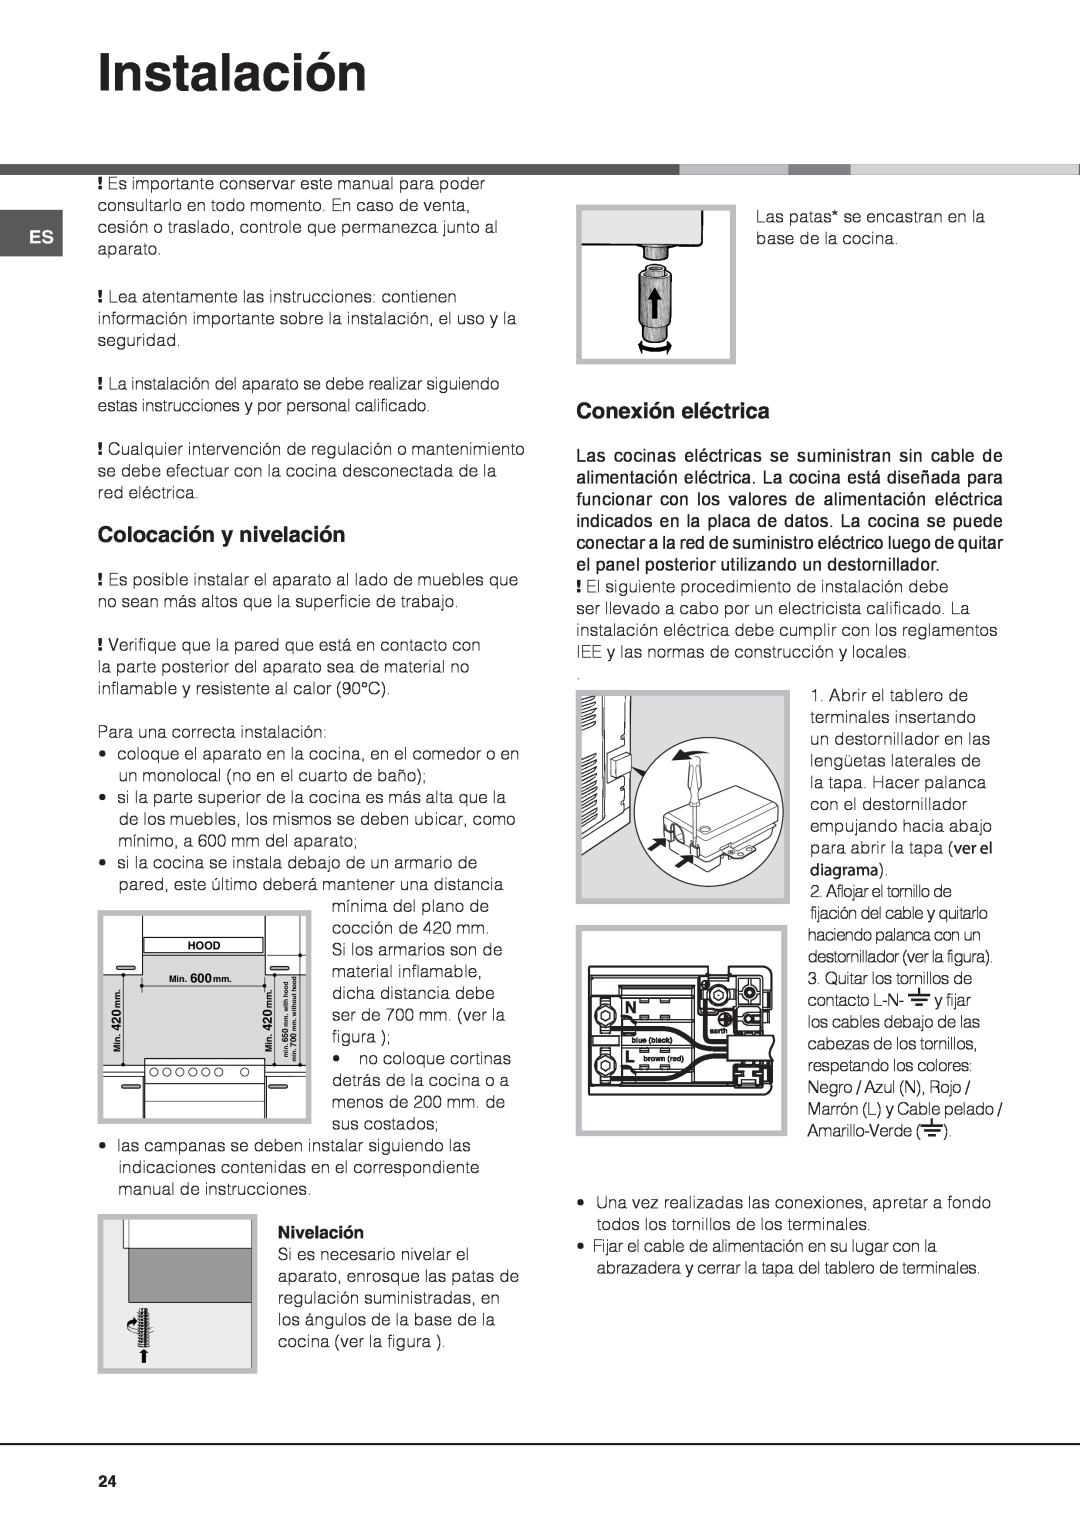 Indesit I6VV2A manual Instalación, Colocación y nivelación, Conexión eléctrica, Nivelación 